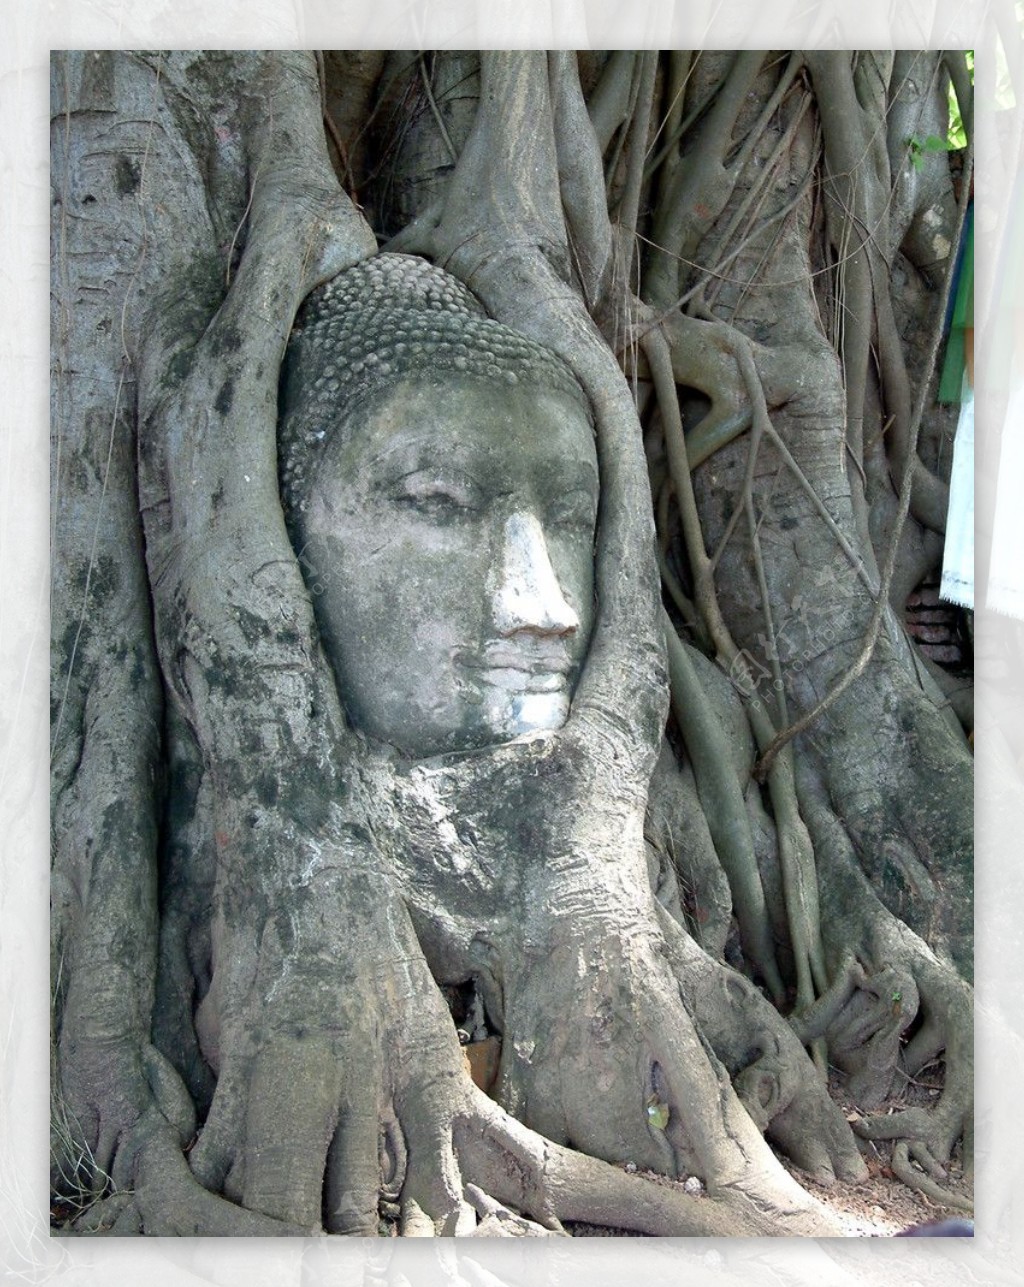 东南亚泰国曼谷东南亚风情民族民俗建筑雕刻艺术石刻图片